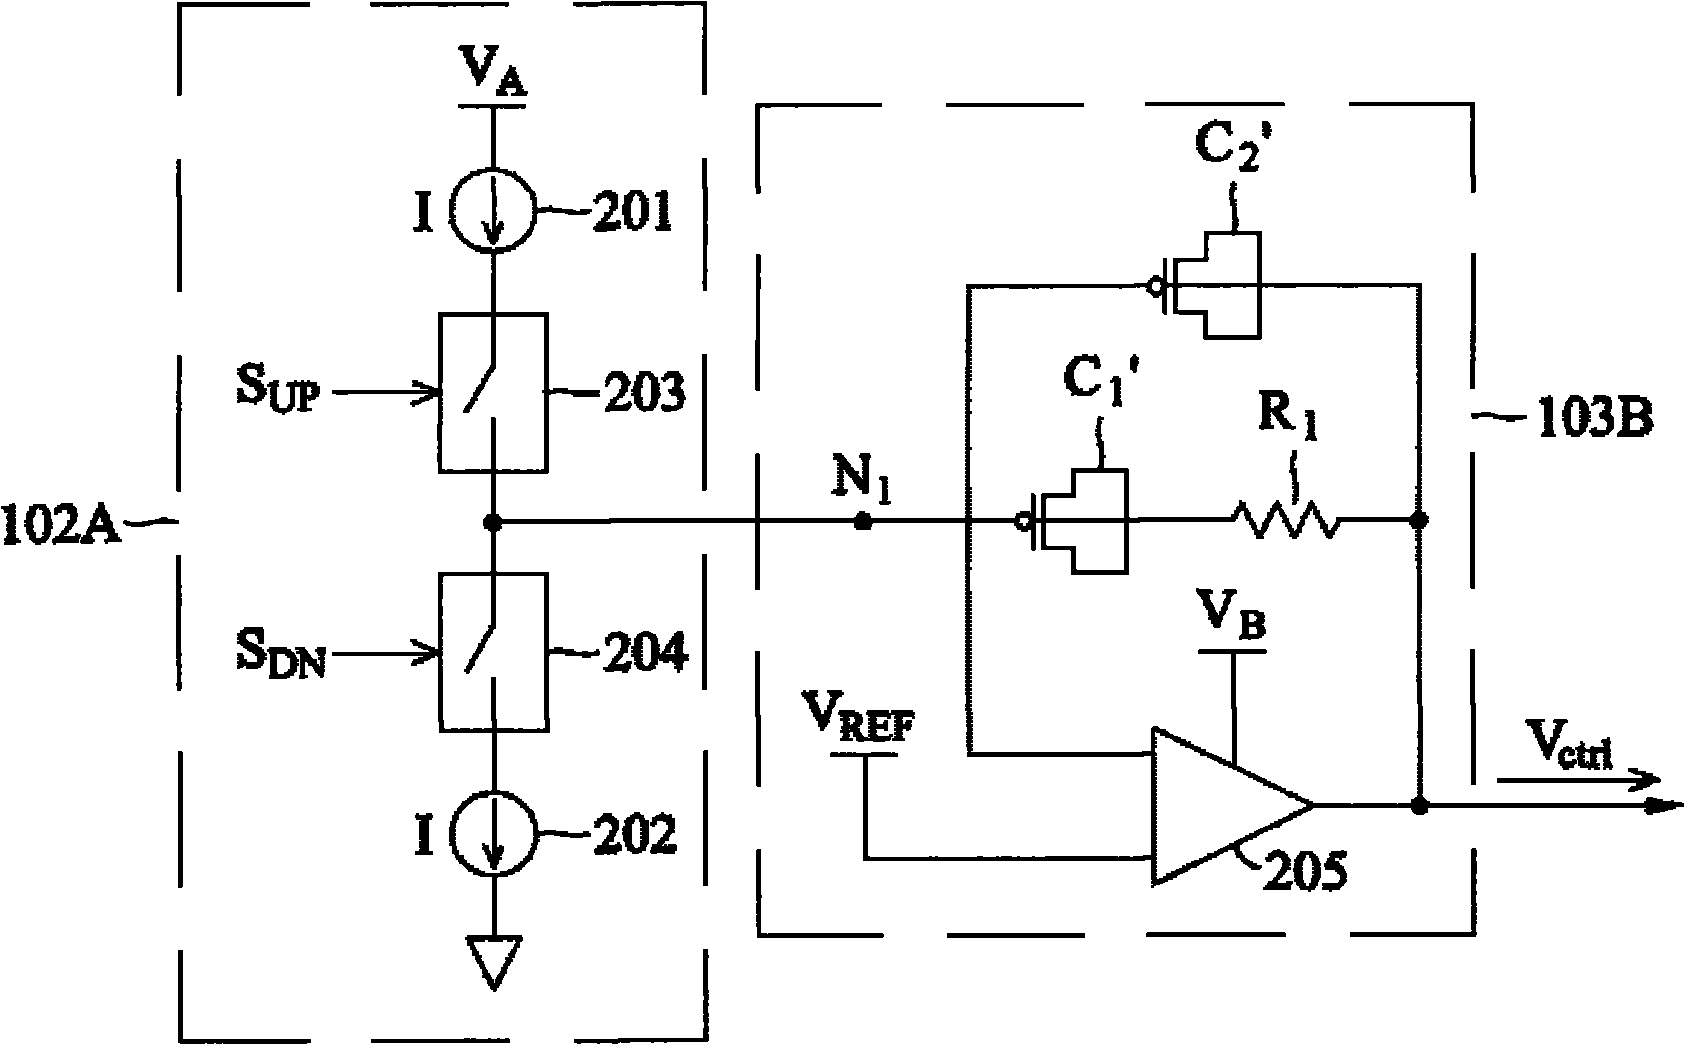 Phase lock loop circuits